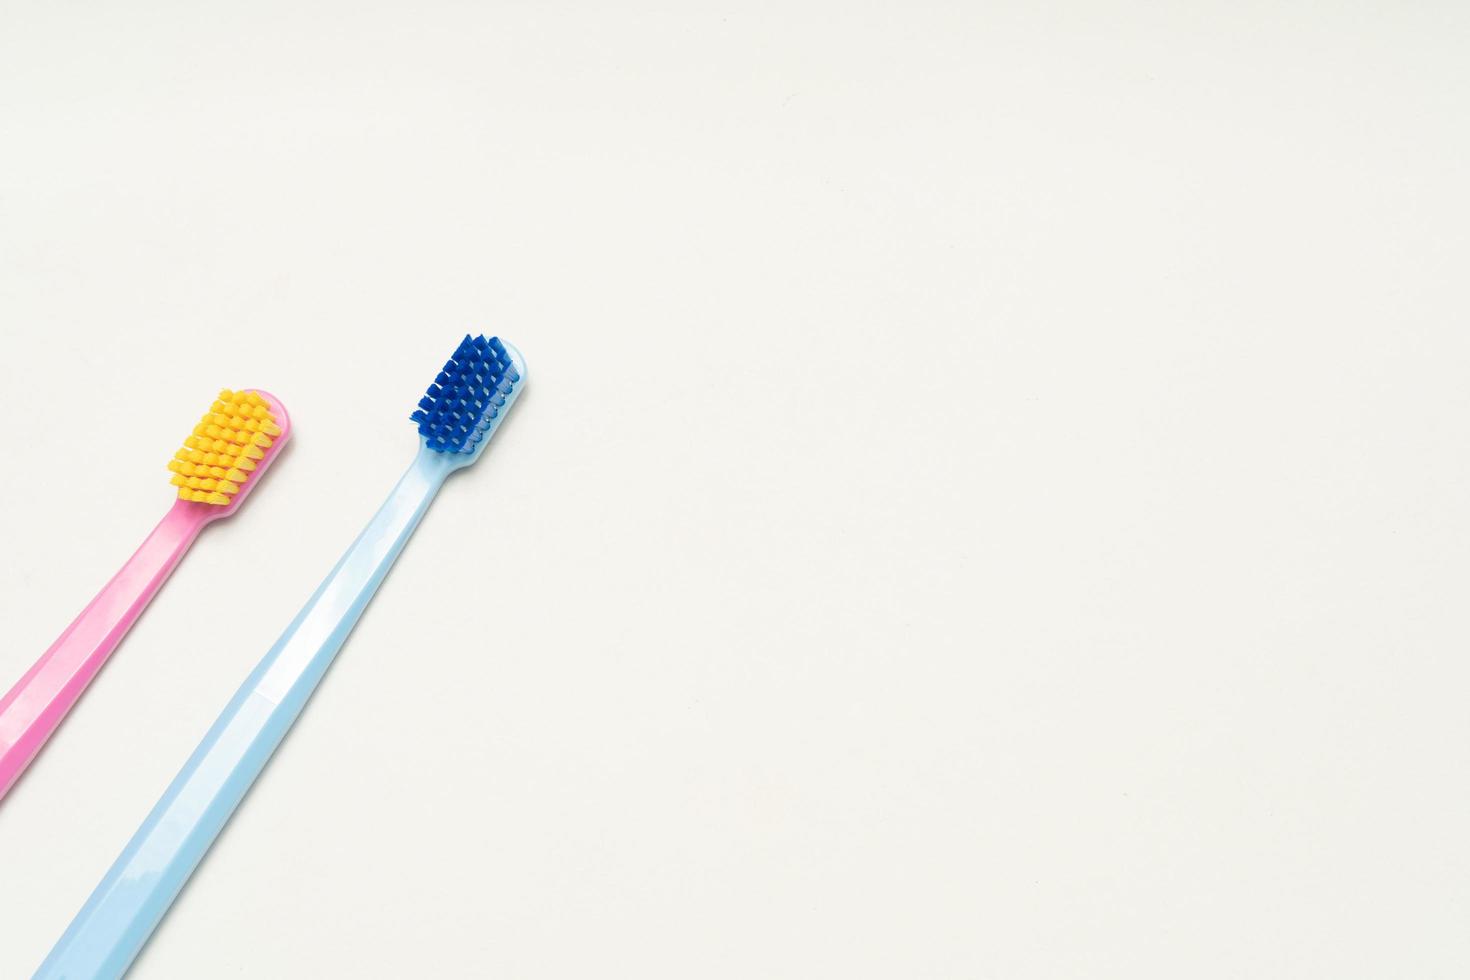 en konceptuell av ett par tandborste i kärlek. tandborstar förmedlar det mänskliga förhållandet mellan en man och en kvinna. foto